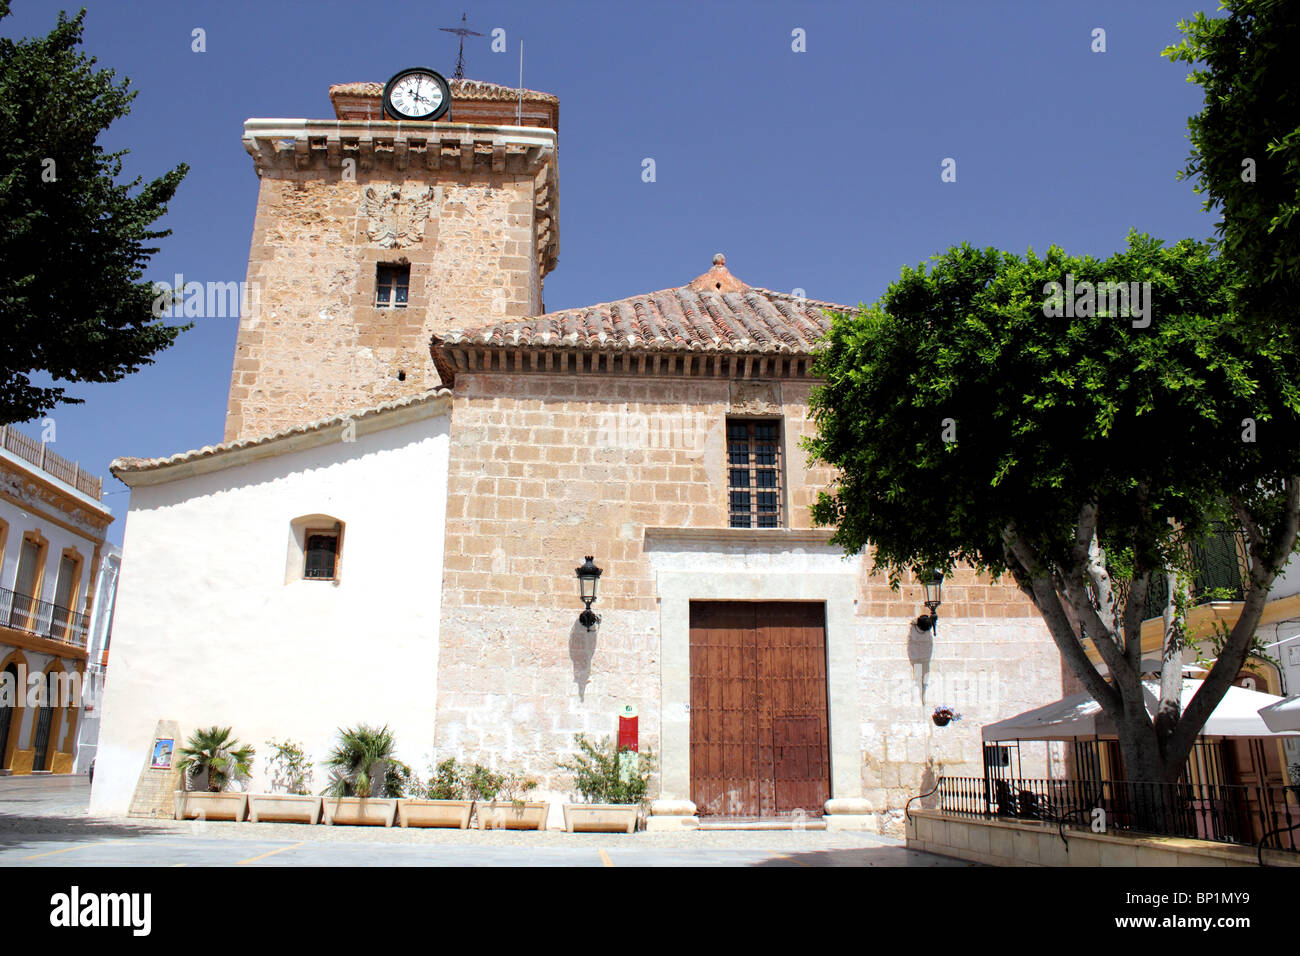 La chiesa in stile mudéjar XVI C. Santa Maria in Plaza de la Constitucion piazza principale vicino a Nijar Almeria, Andalusia Spagna Foto Stock